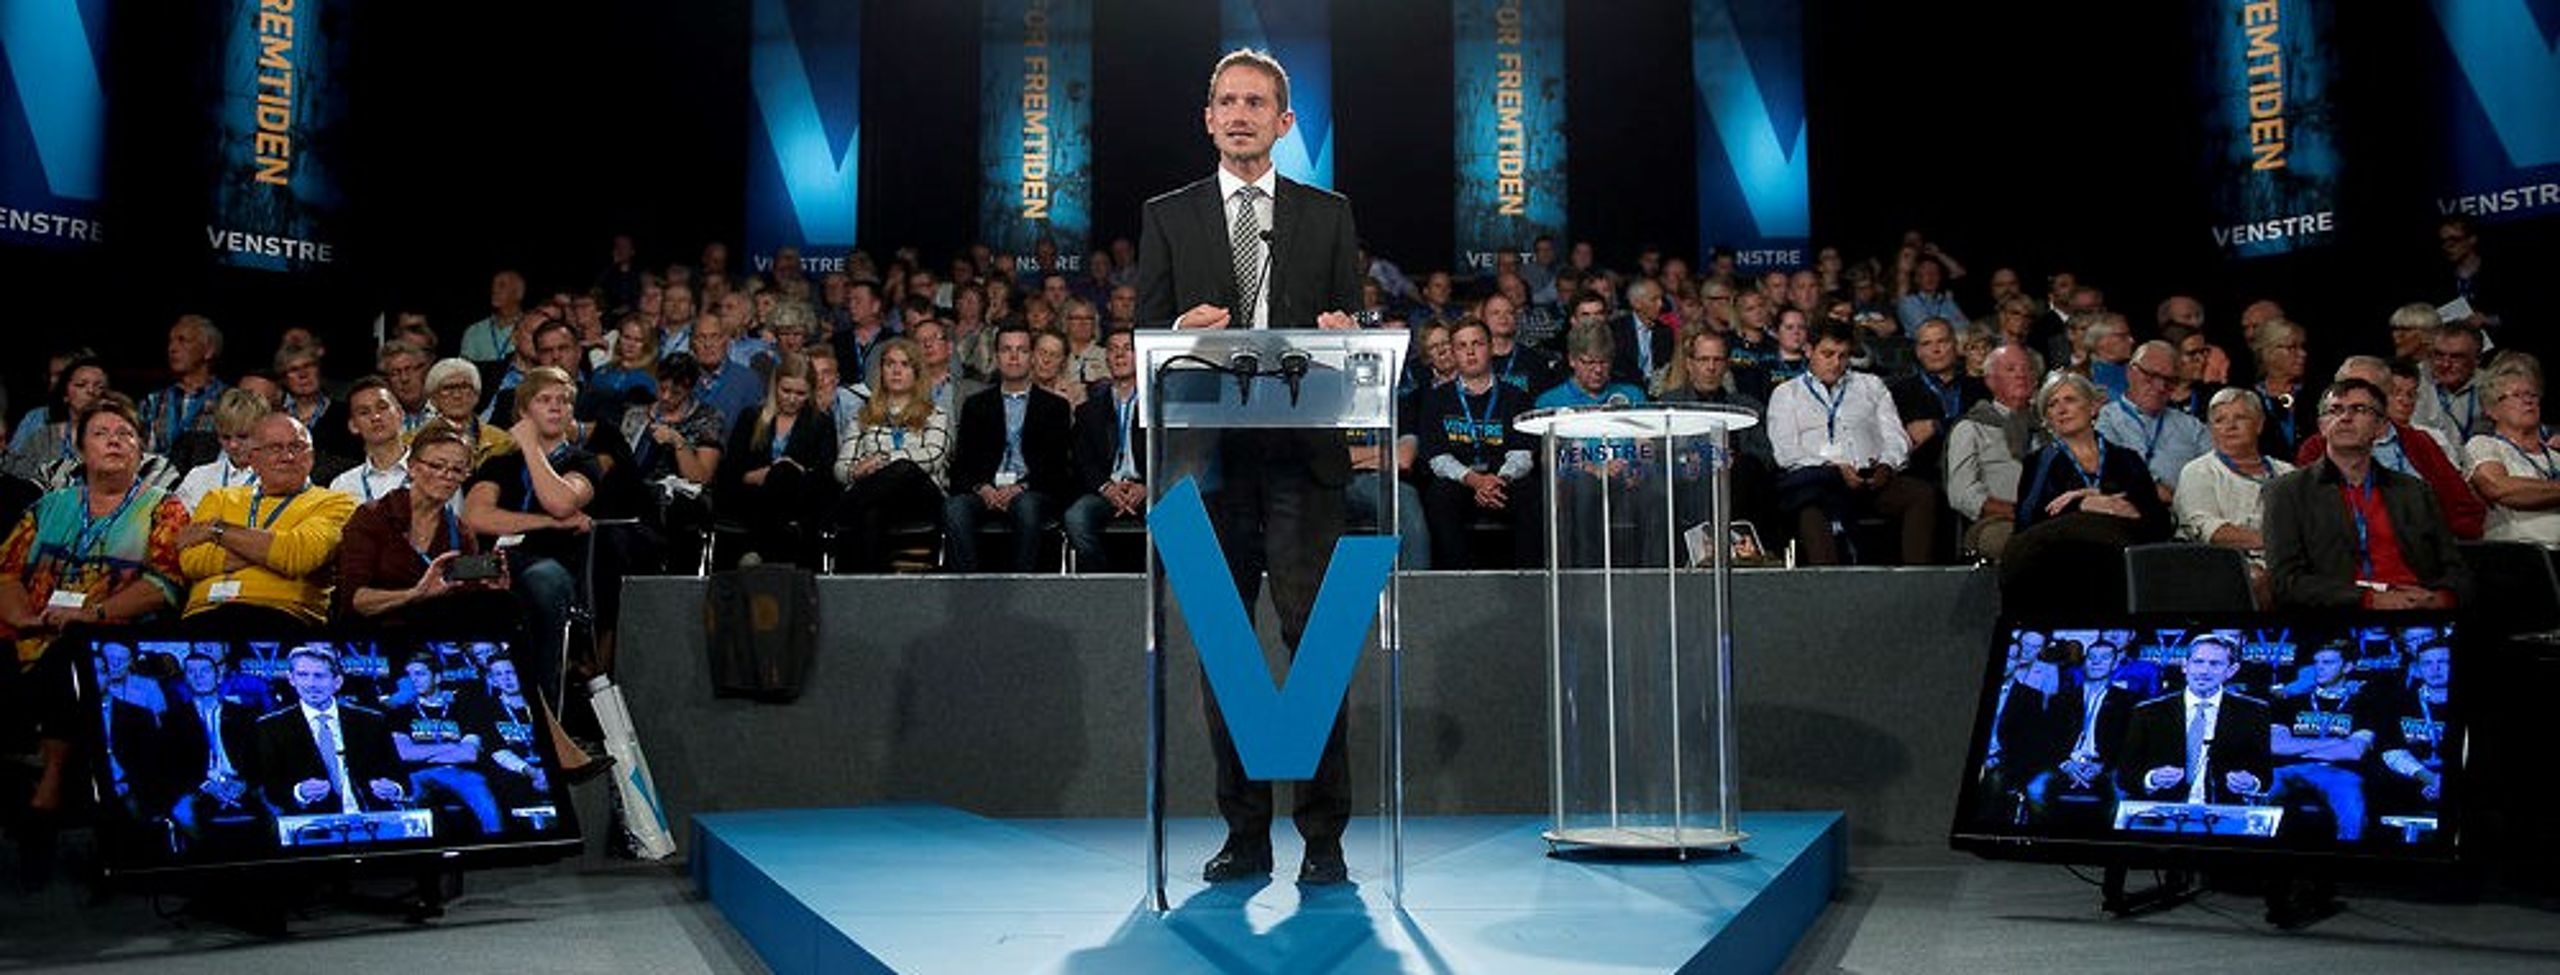 Venstre varmer op til valg på partiets landsmøde i Herning, hvor næstformand Kristian Jensen blandt andet lægger op til et bredt eftersyn af ungdomsuddannelserne. Uddannelsesudspillet er ikke klar endnu, men forventes lanceret inden for et par måneder. <br>